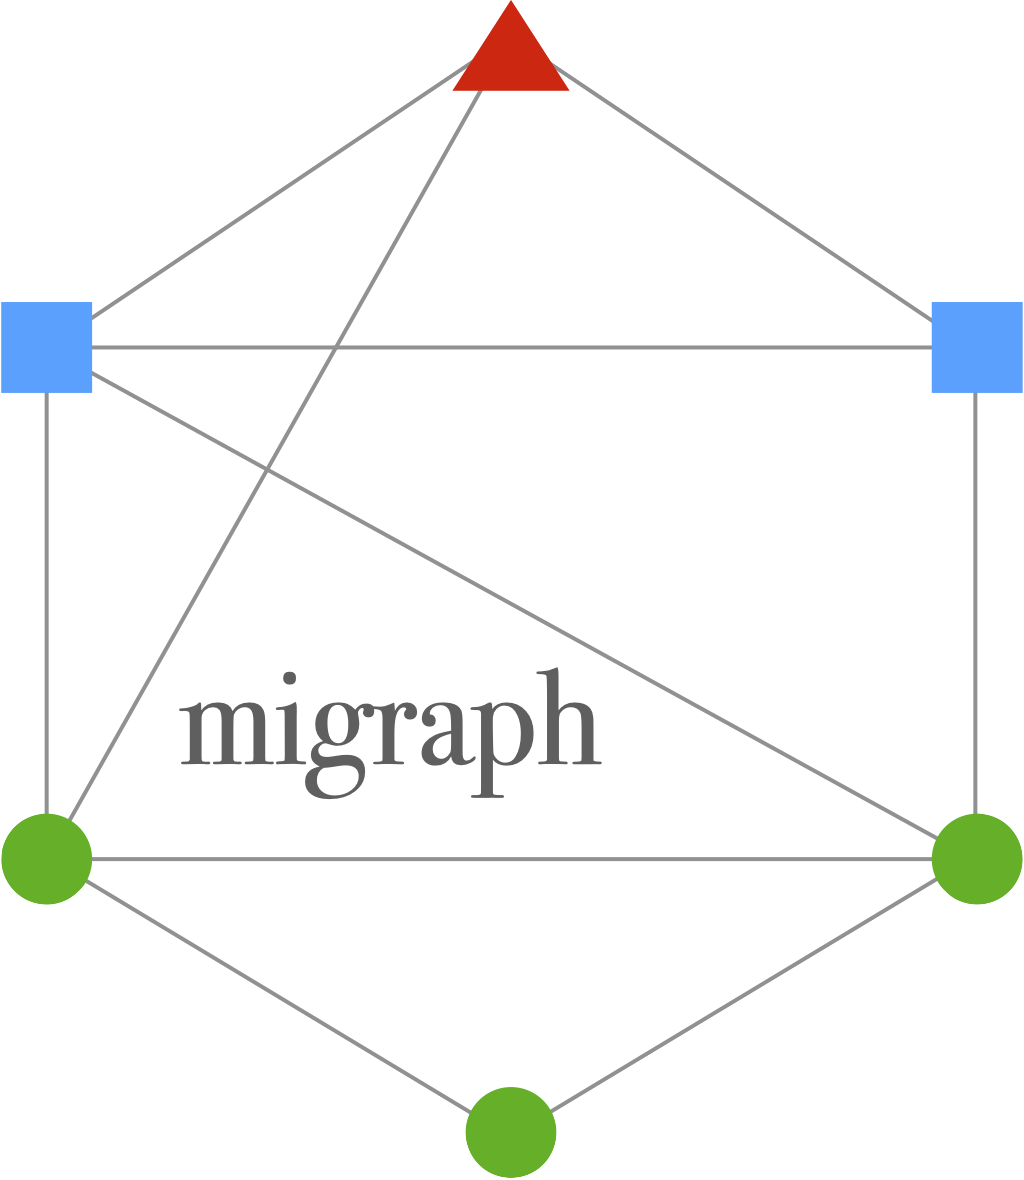 migraph hex sticker